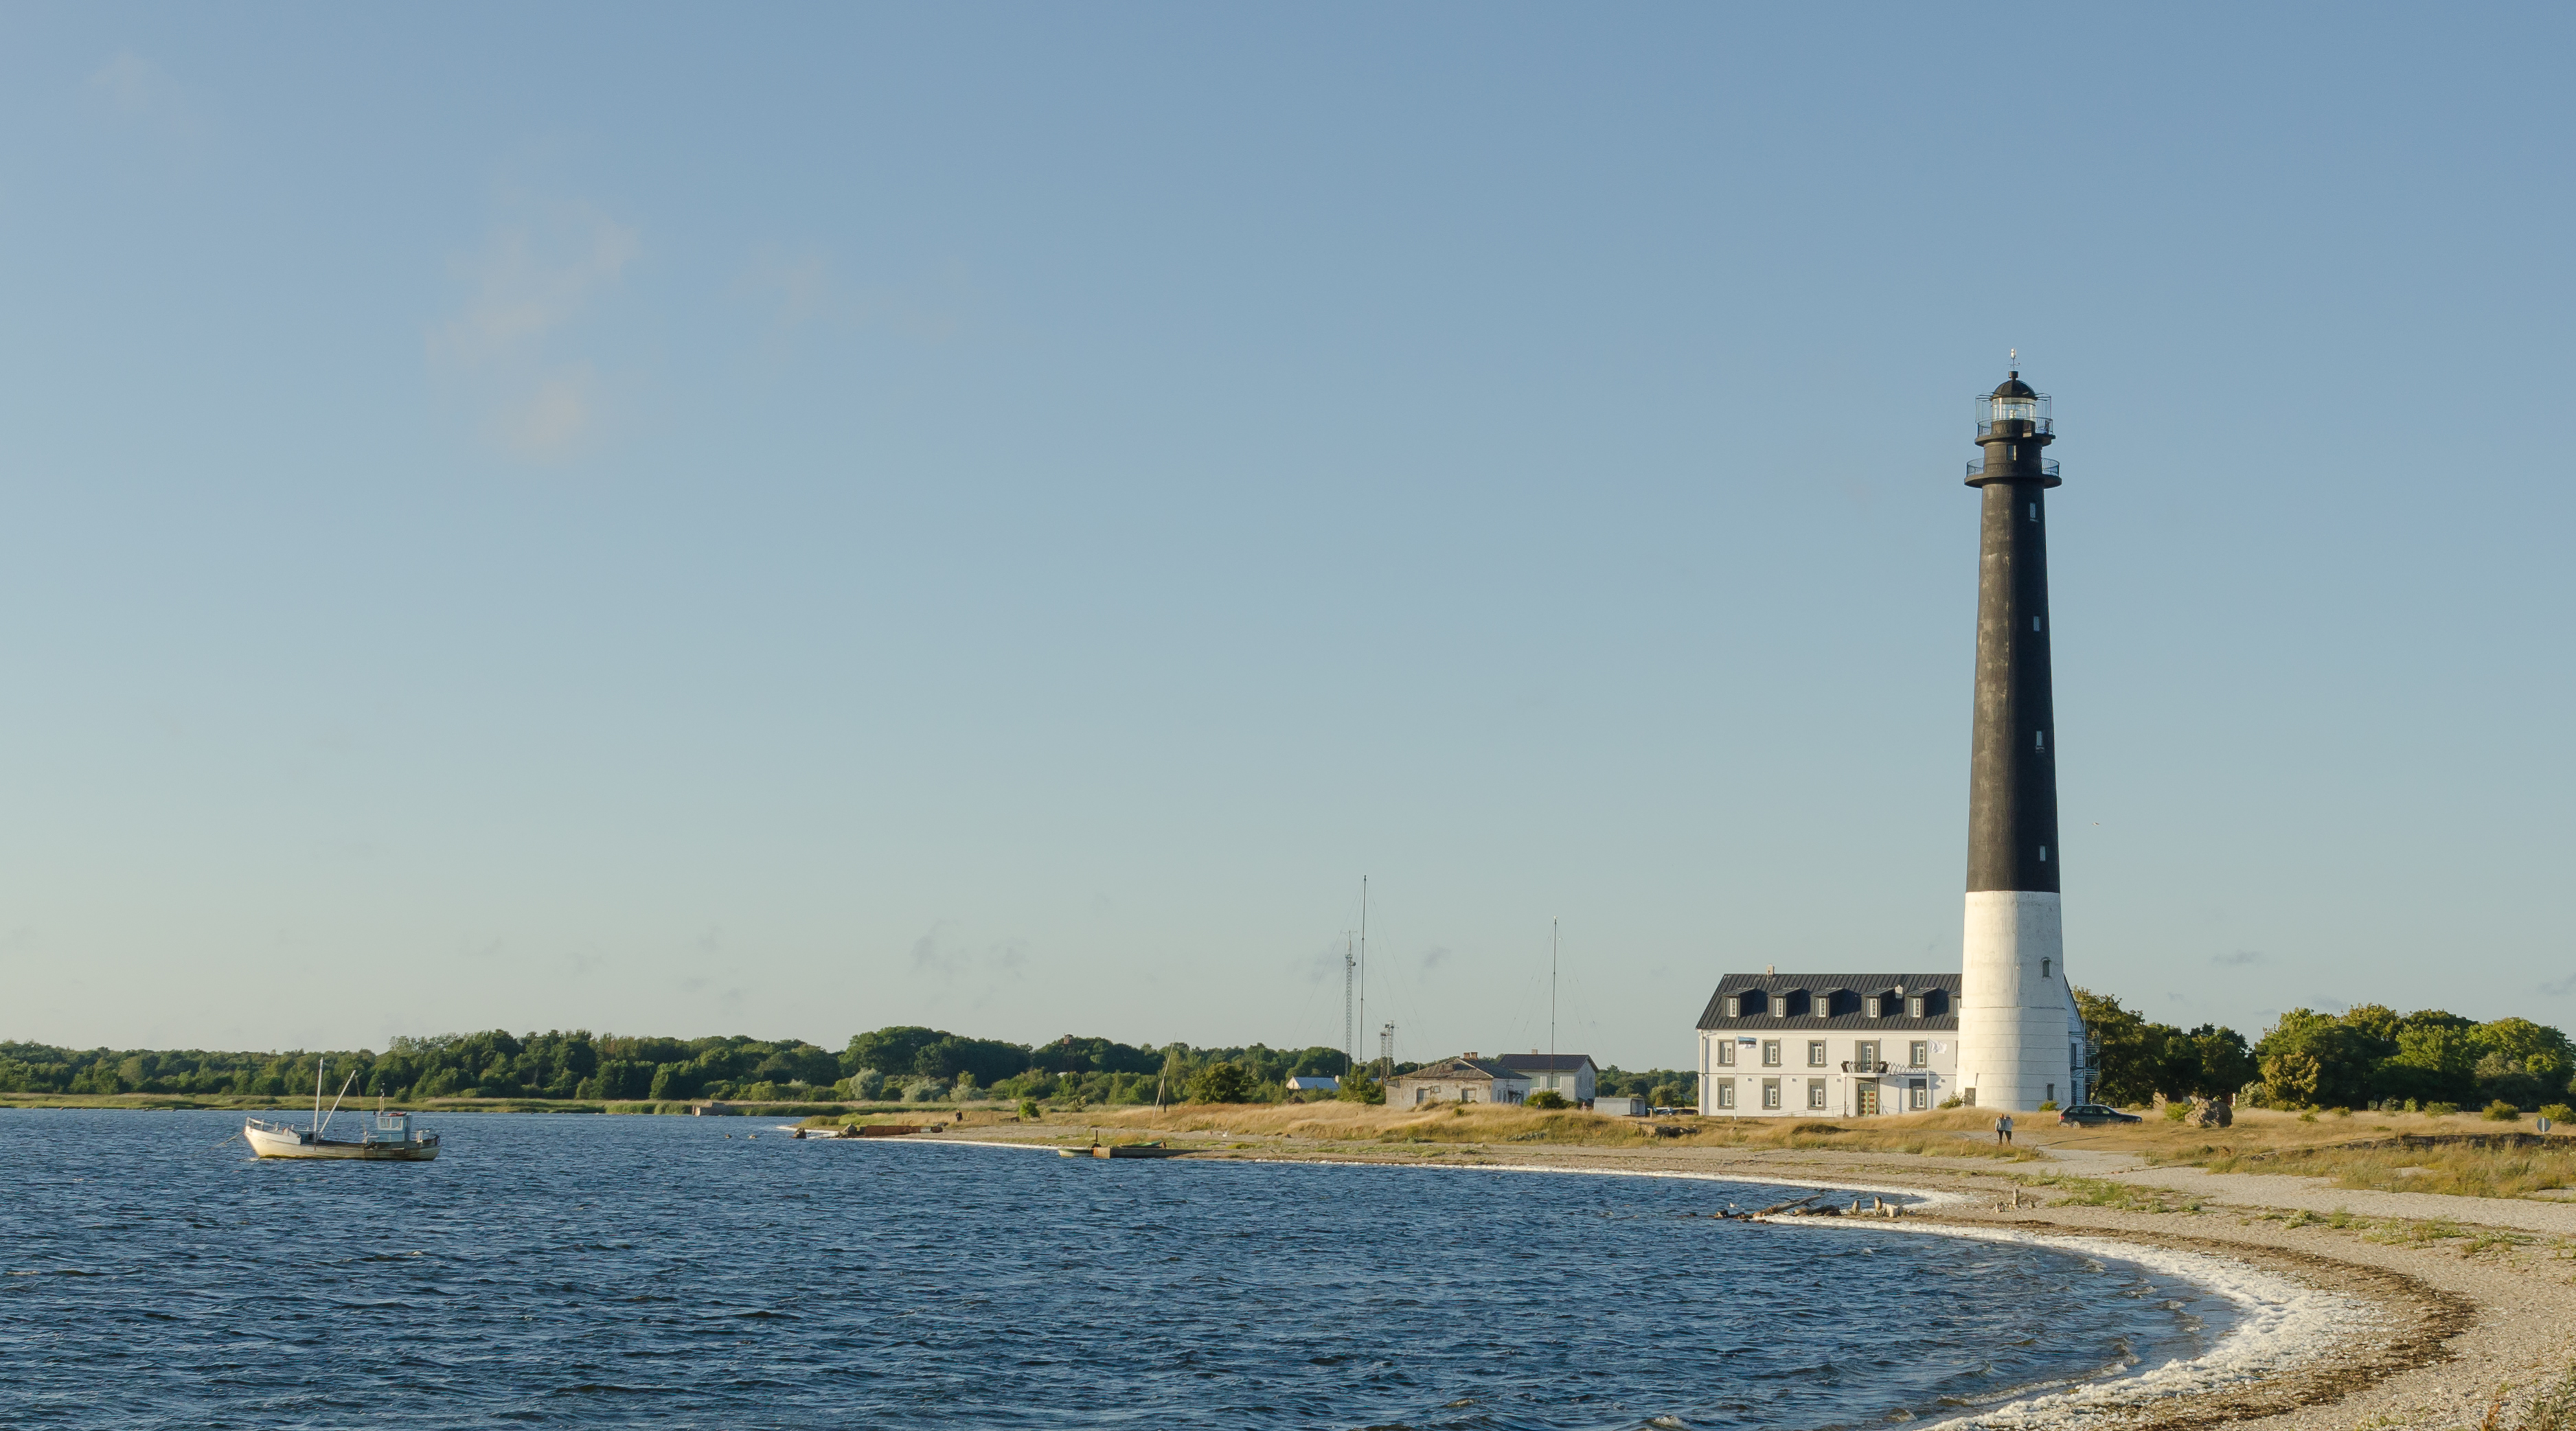 Sõrve lighthouse 2013 - Sõrve lighthouse, Saaremaa, Estonia